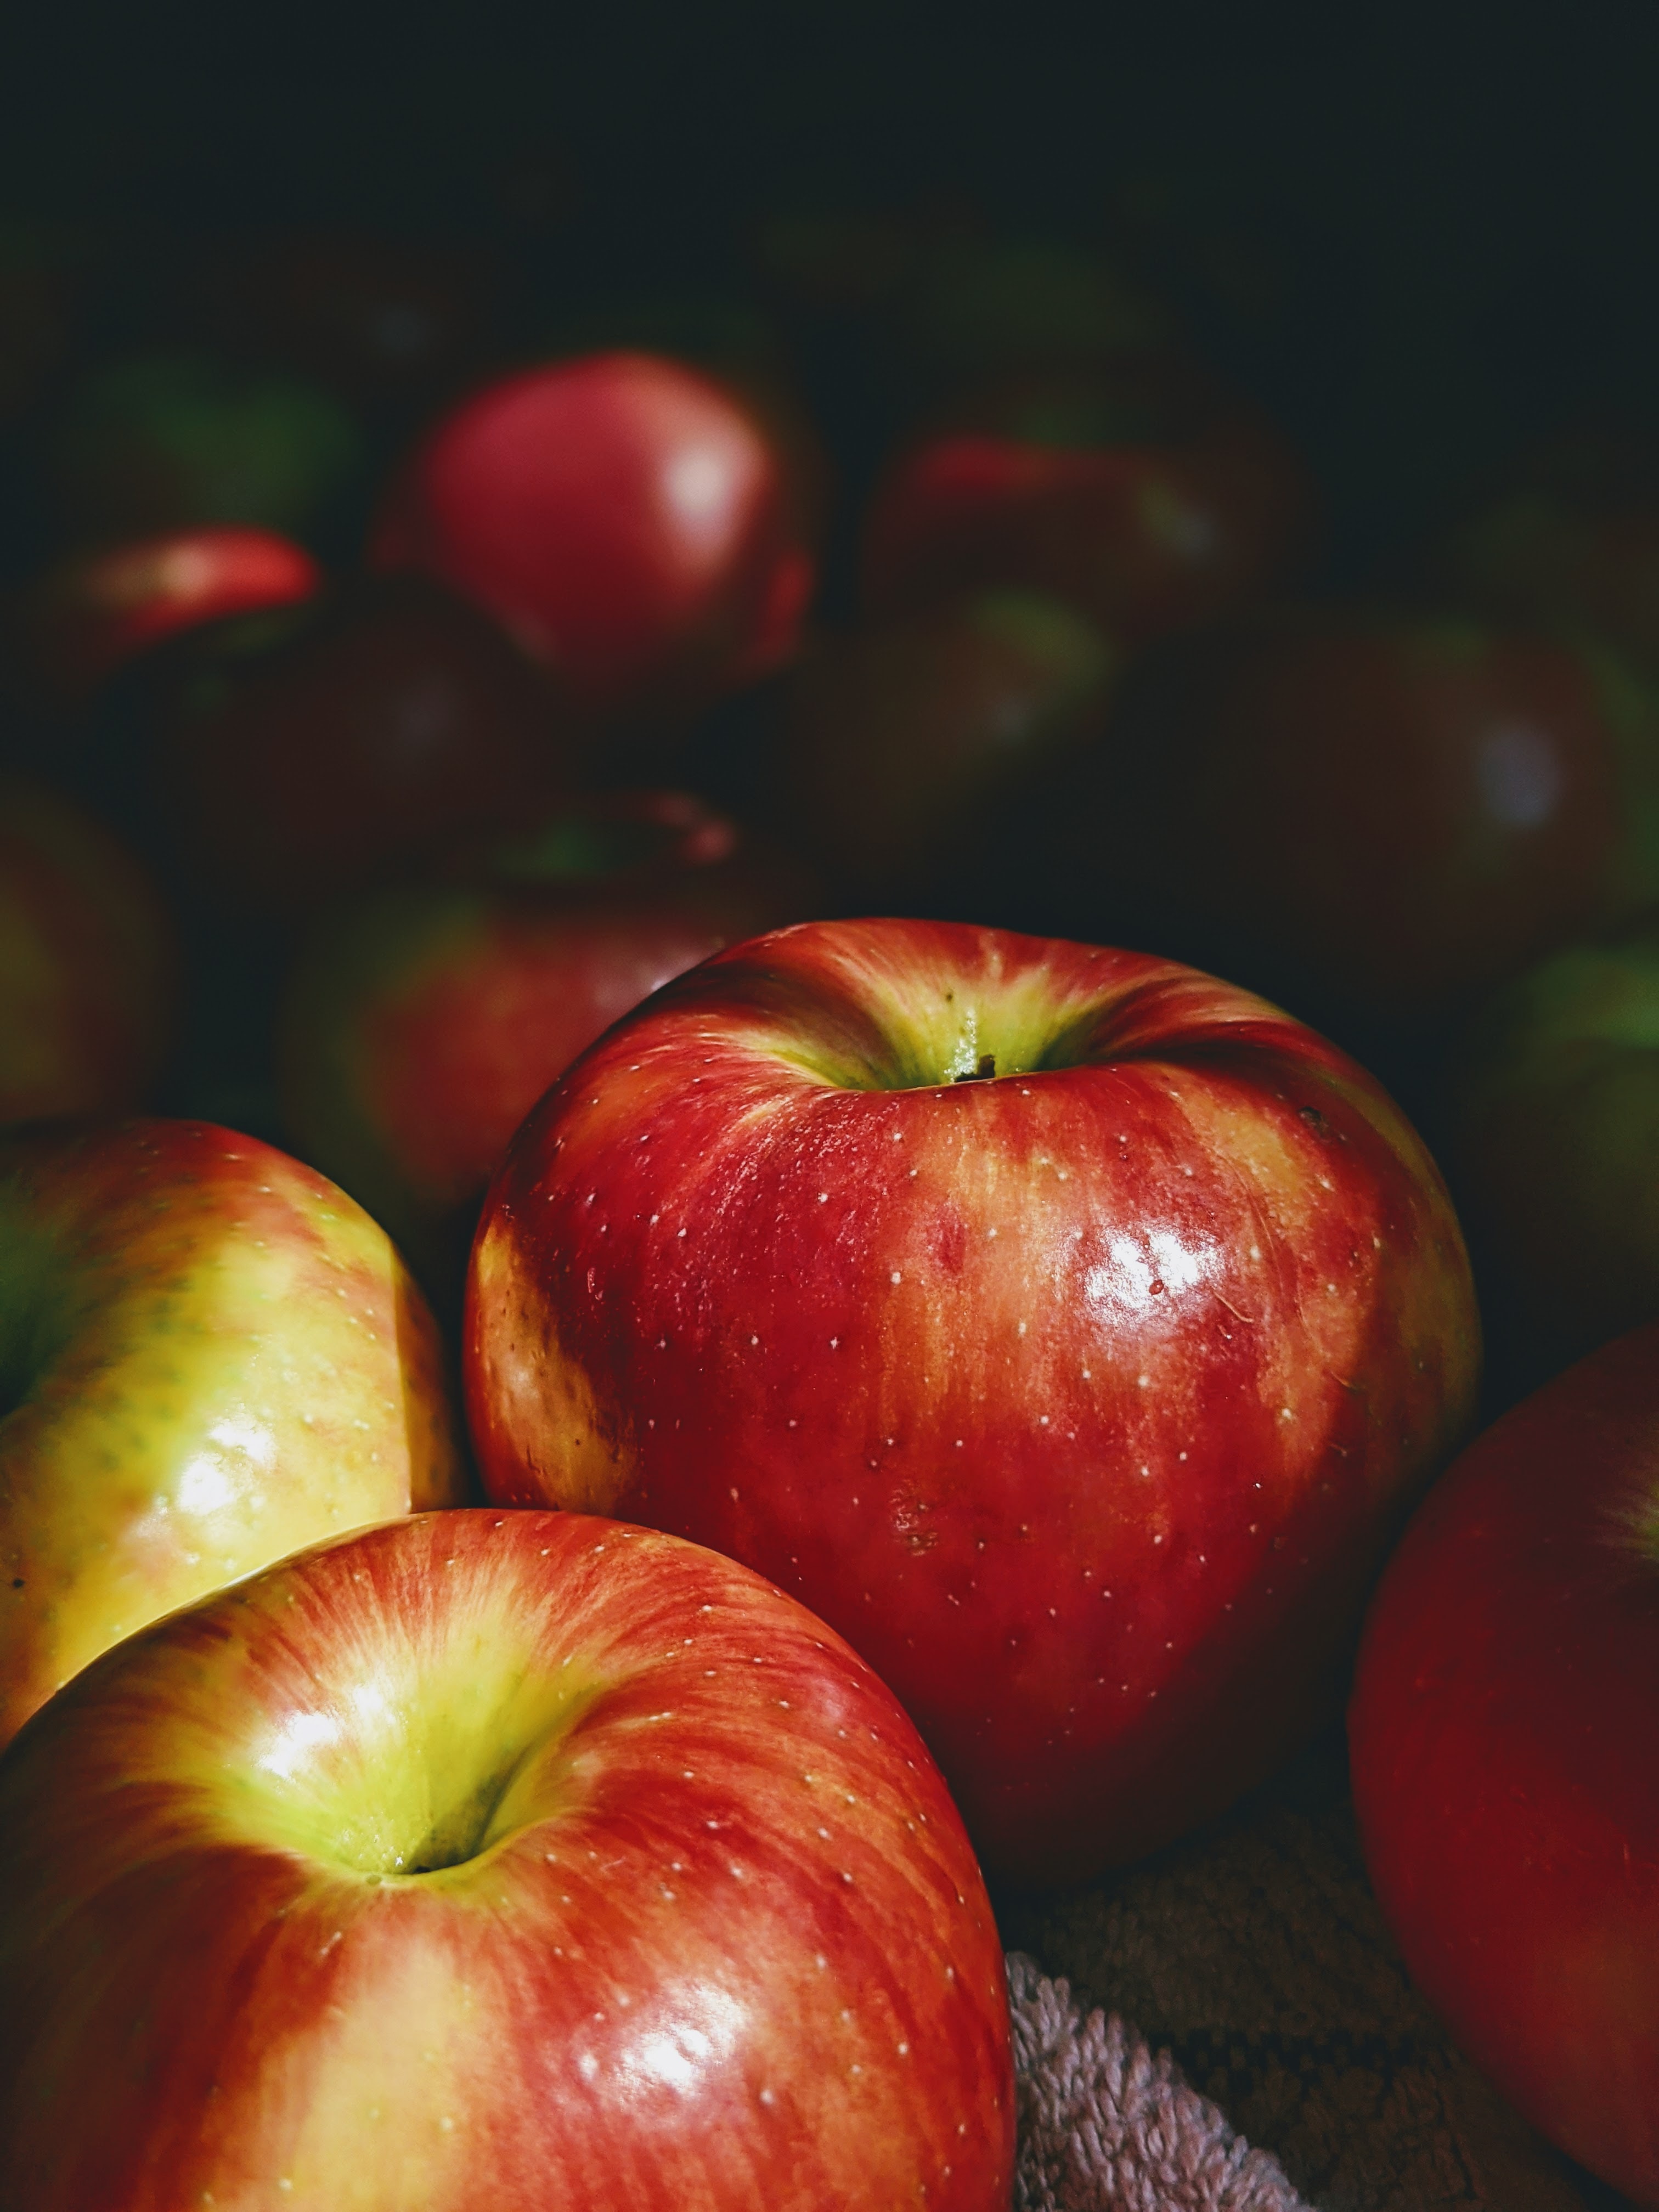 8k Images apple, red, food, fruit